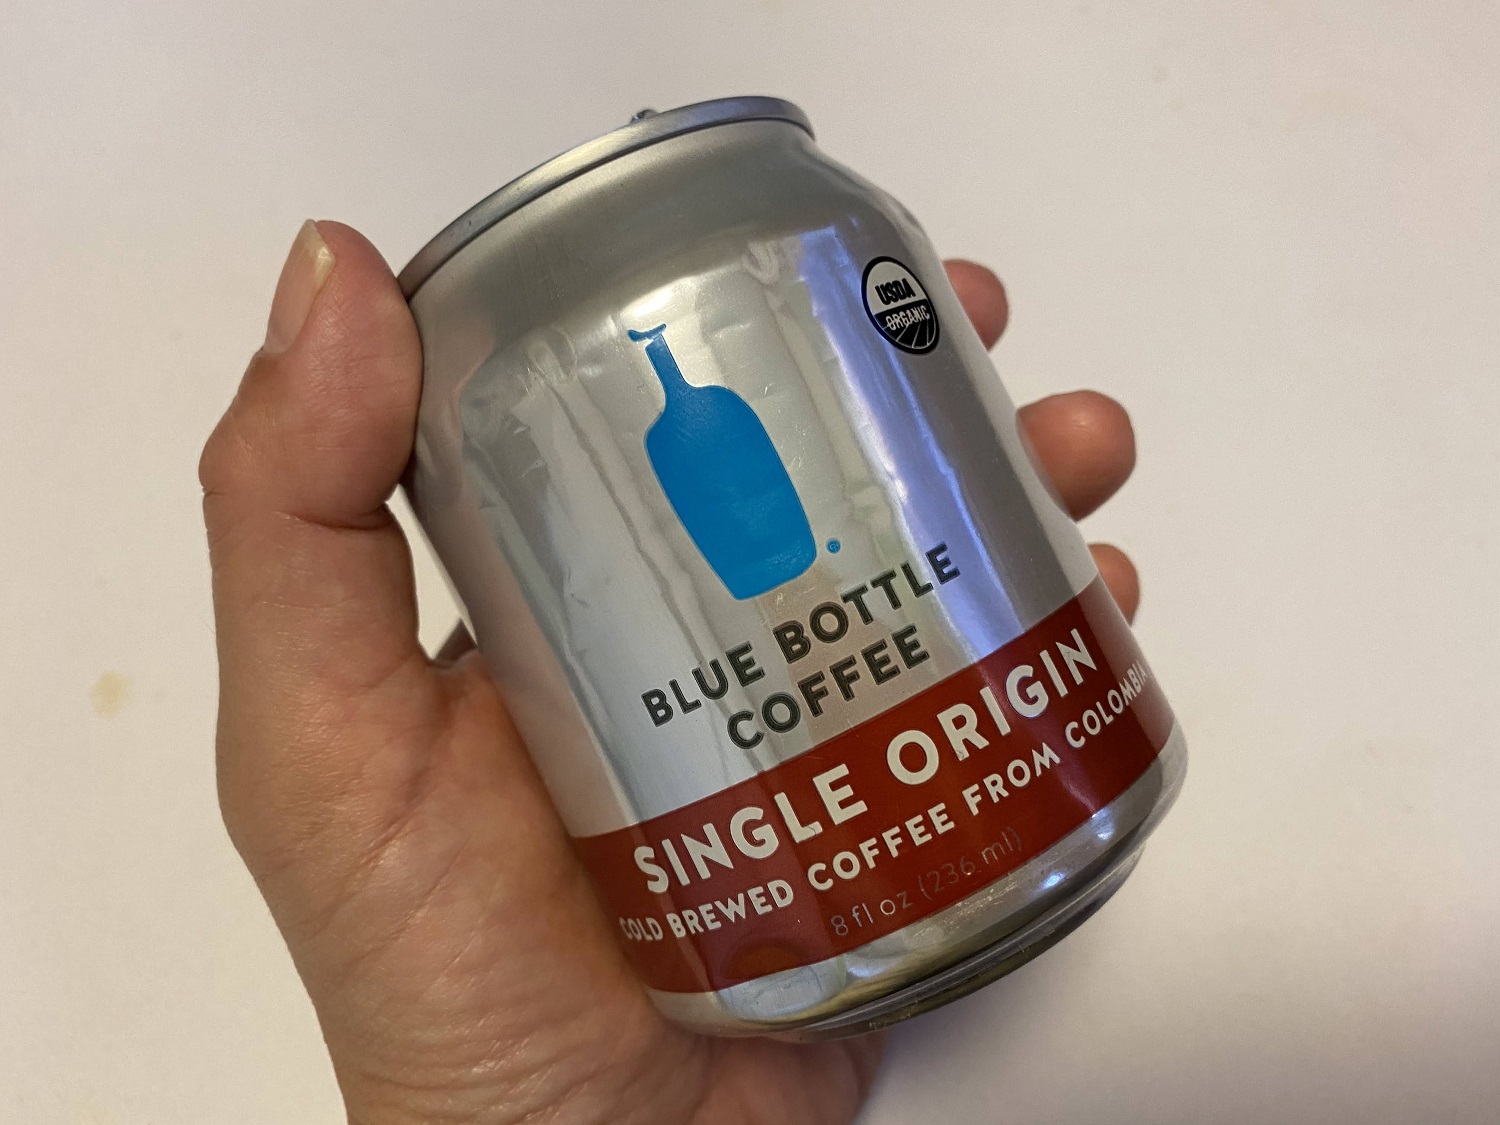 ブルーボトルコーヒー缶コーヒー「シングルオリジン」を購入